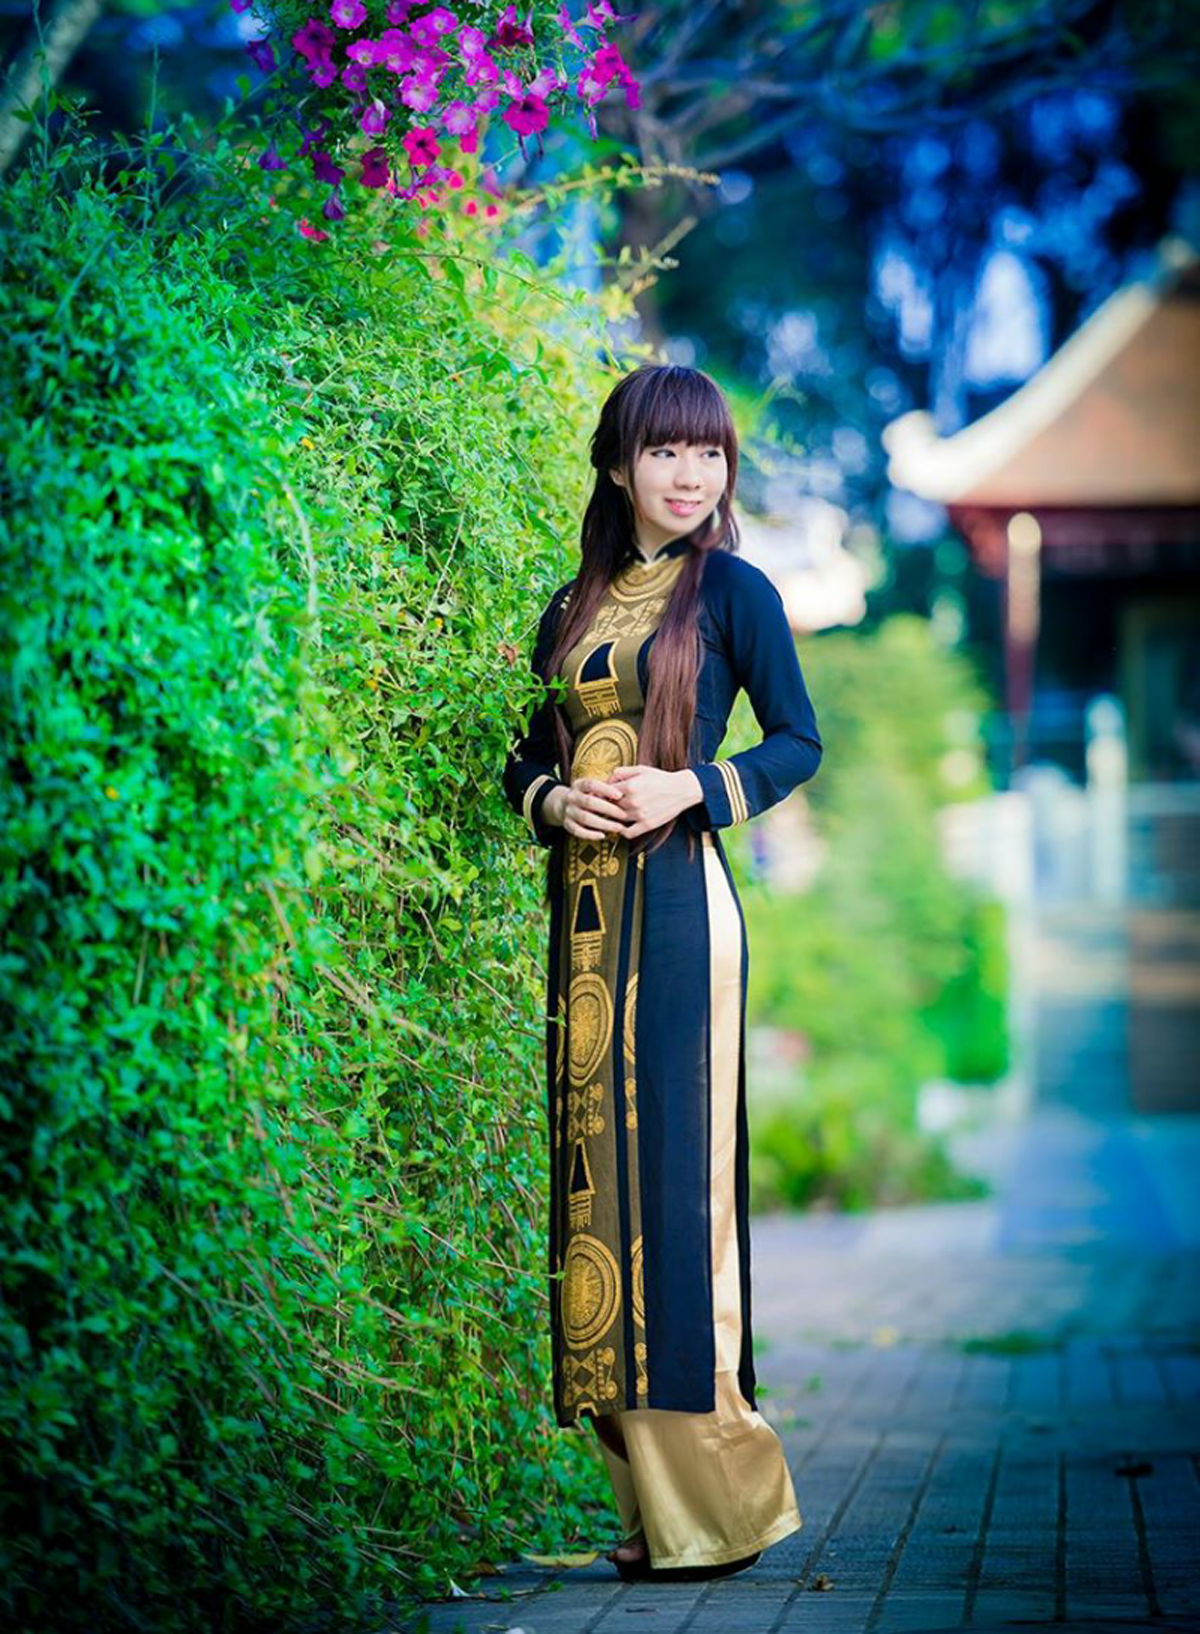 <p> "Em nghĩ rằng, với bất kỳ cô gái nào, dù có cá tính đến đâu thì khi khoác lên mình bộ trang phục truyền thống Việt Nam cũng đều cảm thấy tự hào", nữ sinh FPT Polytechnic bộc bạch.</p>